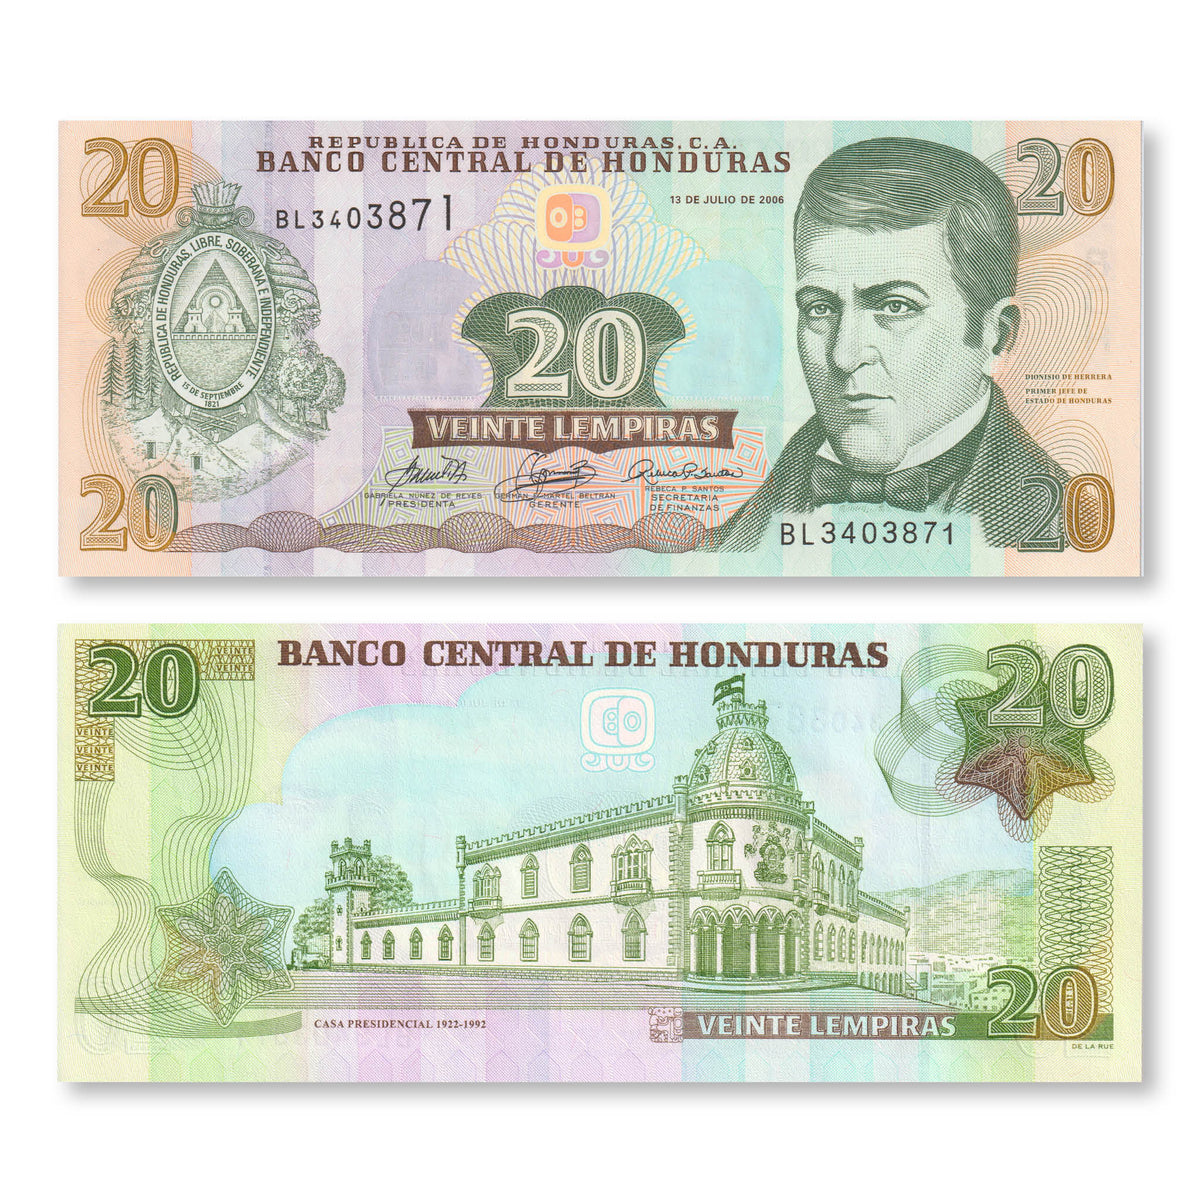 Honduras 20 Lempiras, 2006, B339b, P93, UNC - Robert's World Money - World Banknotes